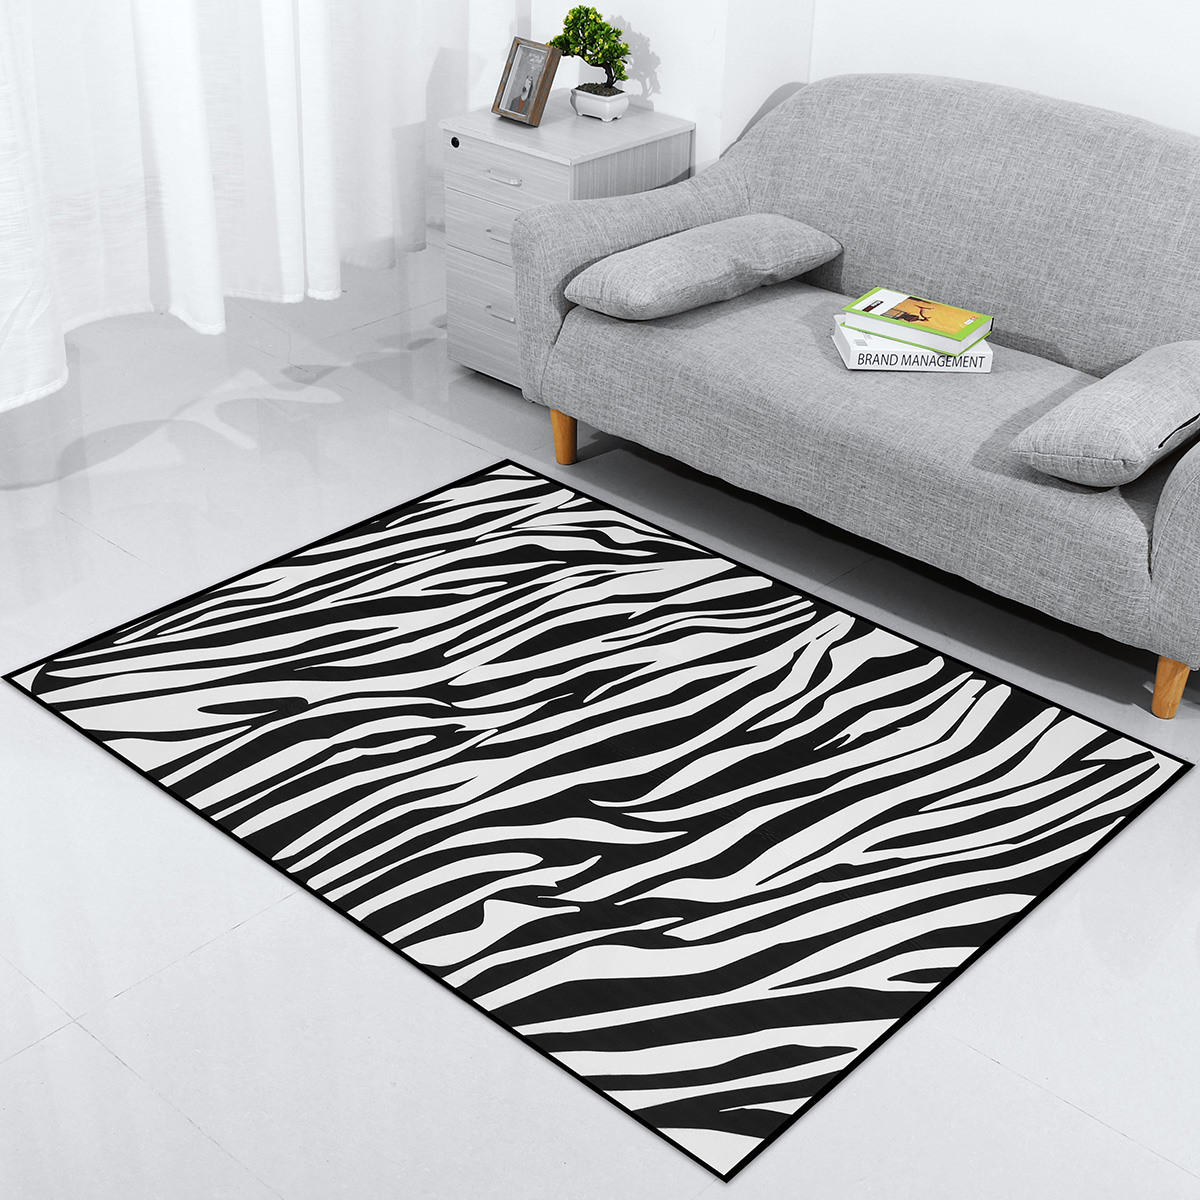 Living-Room-Carpet-Bedroom-Sofa-Rug-Floor-Mat-Decor-Kitchen-Mat-Door-Mat-Home-Water-Absorption-Pad-1615244-1